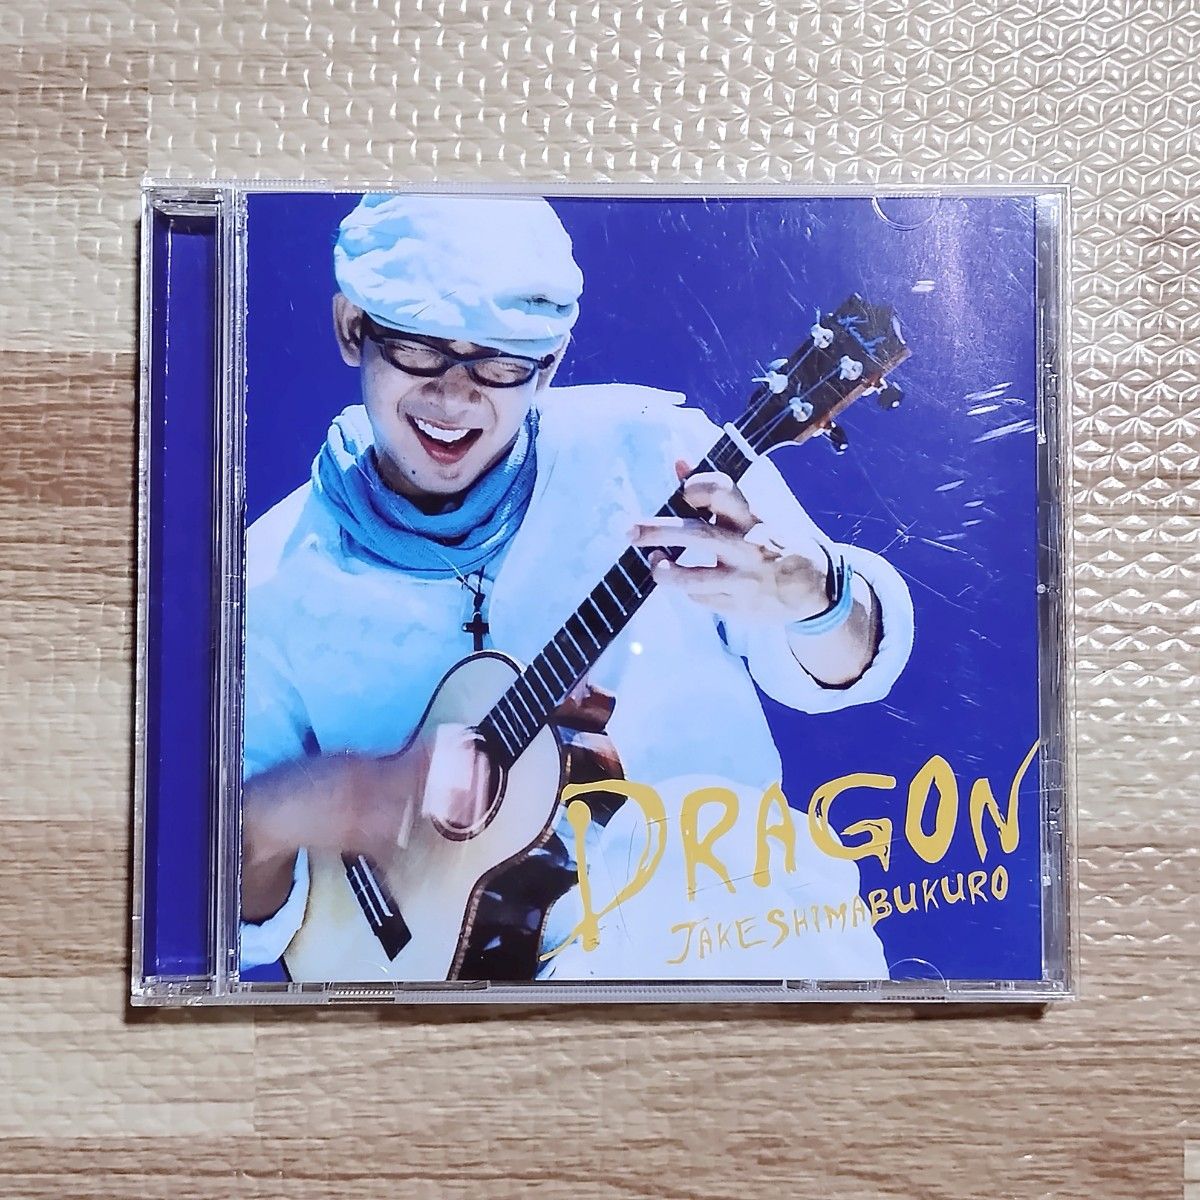 CD「ドラゴン」ジェイク・シマブクロ